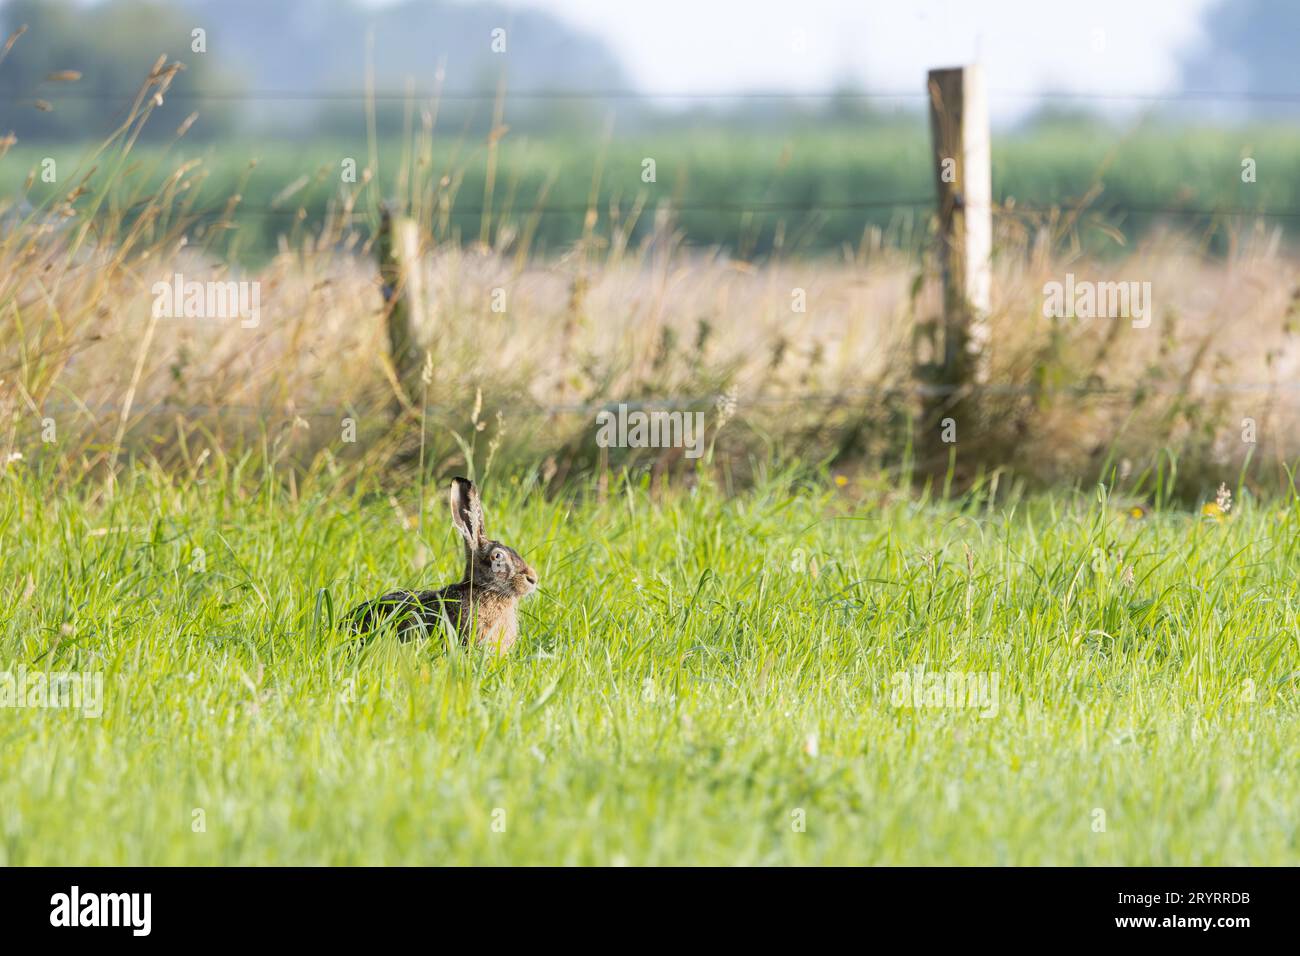 Paesaggio con lepre europea, Lepus europaeus, riposante ma attento con orecchie pungenti e occhi dorati affilati nel suo habitat naturale di prati olandesi Foto Stock